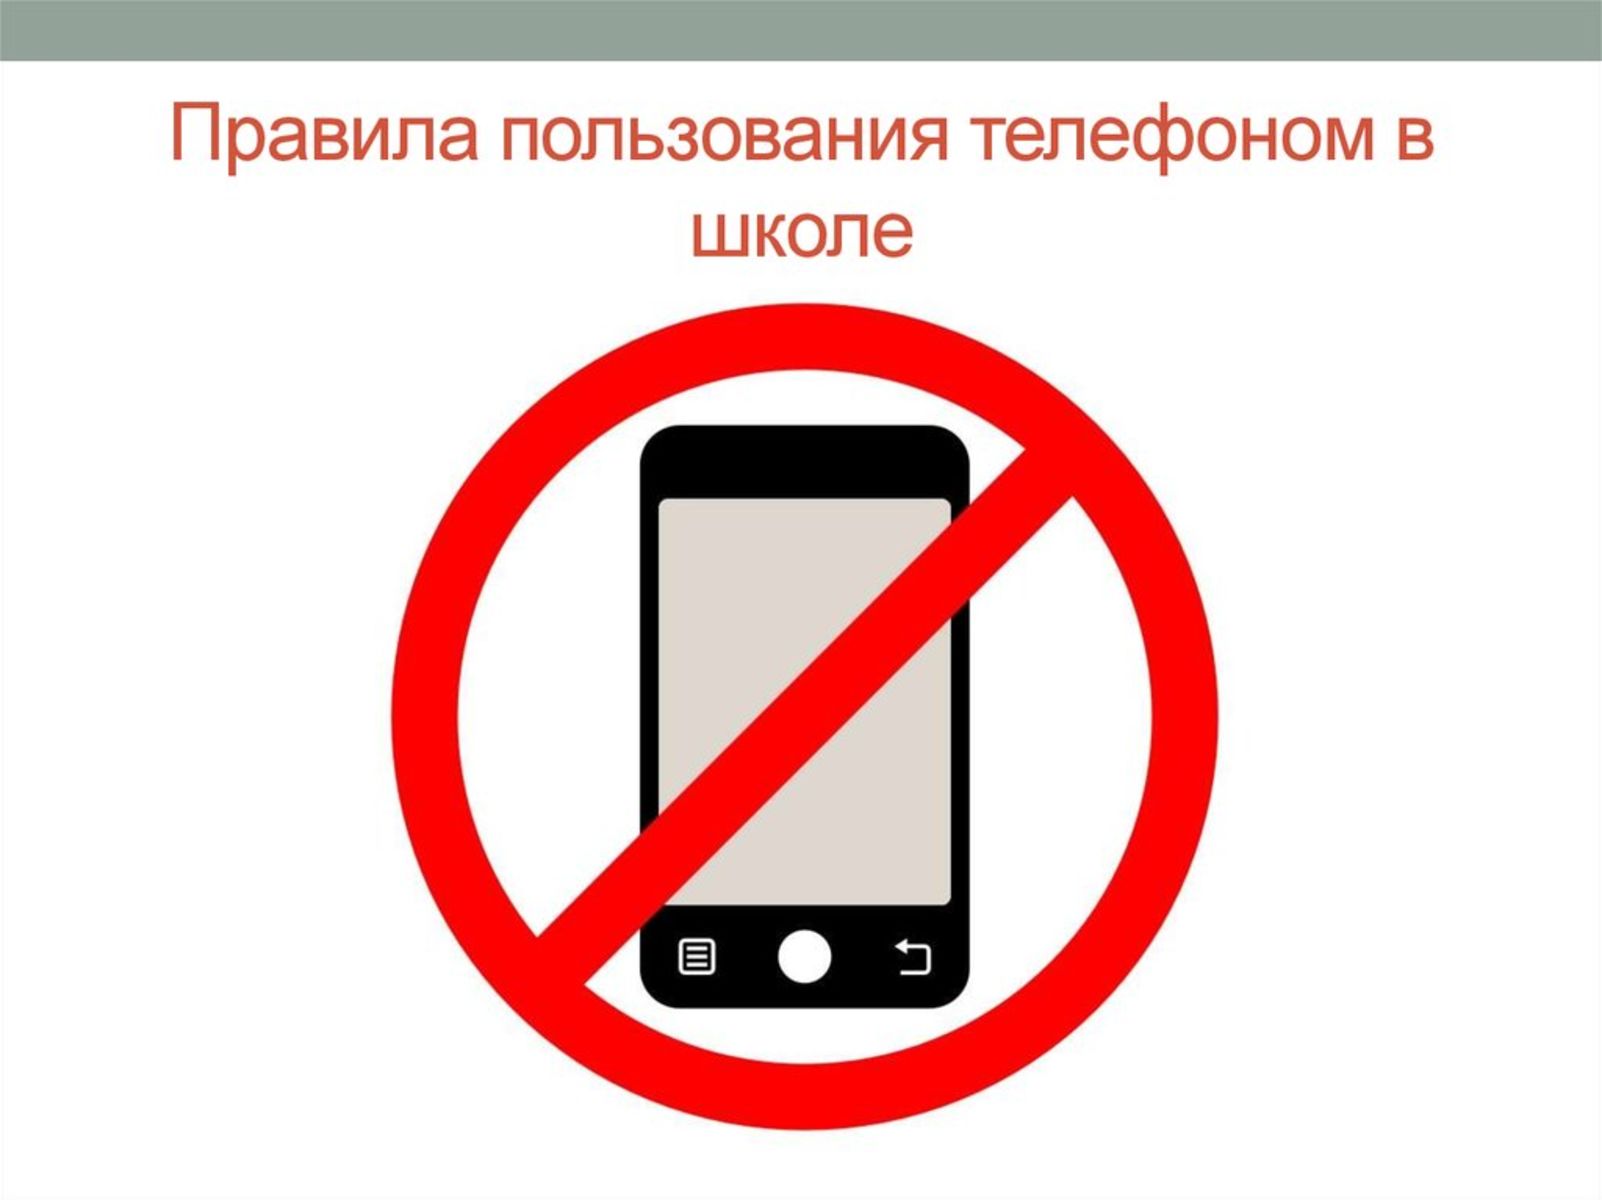 Почему нельзя играть в телефоне. Запрет на пользование телефоном. Запреи использования мобиль. Правила пользования телефоном в школе. Использование телефона в школе запрещено.